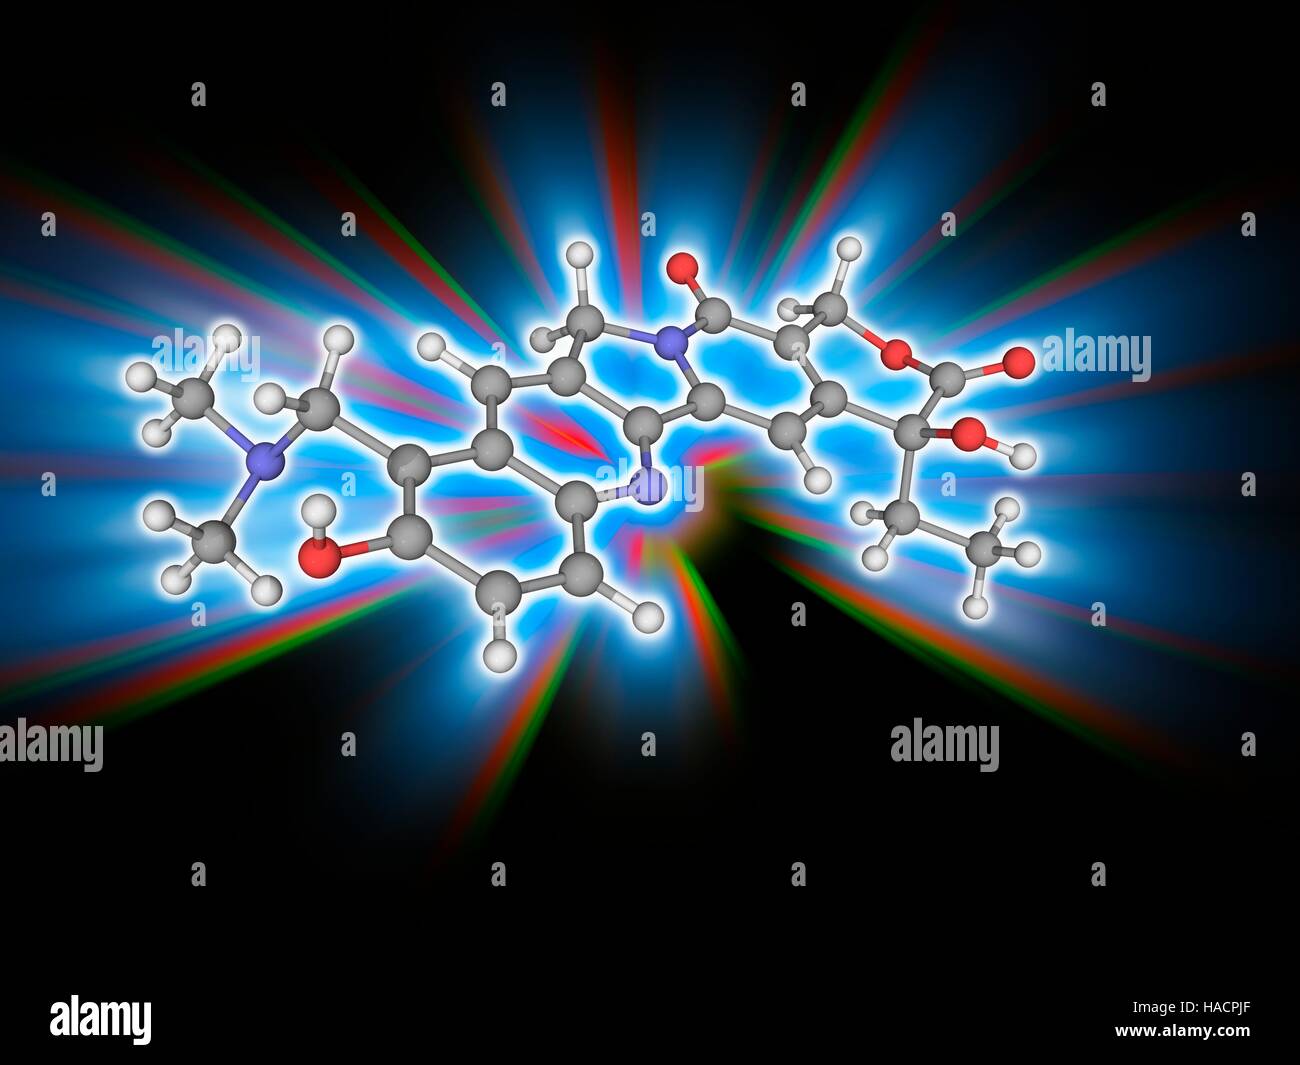 Topotecan. Molekulares Modell des Medikaments Topotecan (C23. H23. N3. O5), eine Chemotherapie-Agent, der als eine Topoisomerase ich Inhibitor fungiert. Es wird zur Behandlung von Eierstockkrebs sowie Lungenkrebs und anderen Krebsarten. Atome als Kugeln dargestellt werden und sind farblich gekennzeichnet: Kohlenstoff (grau), Wasserstoff (weiß), Stickstoff (blau) und Sauerstoff (rot). Abbildung. Stockfoto